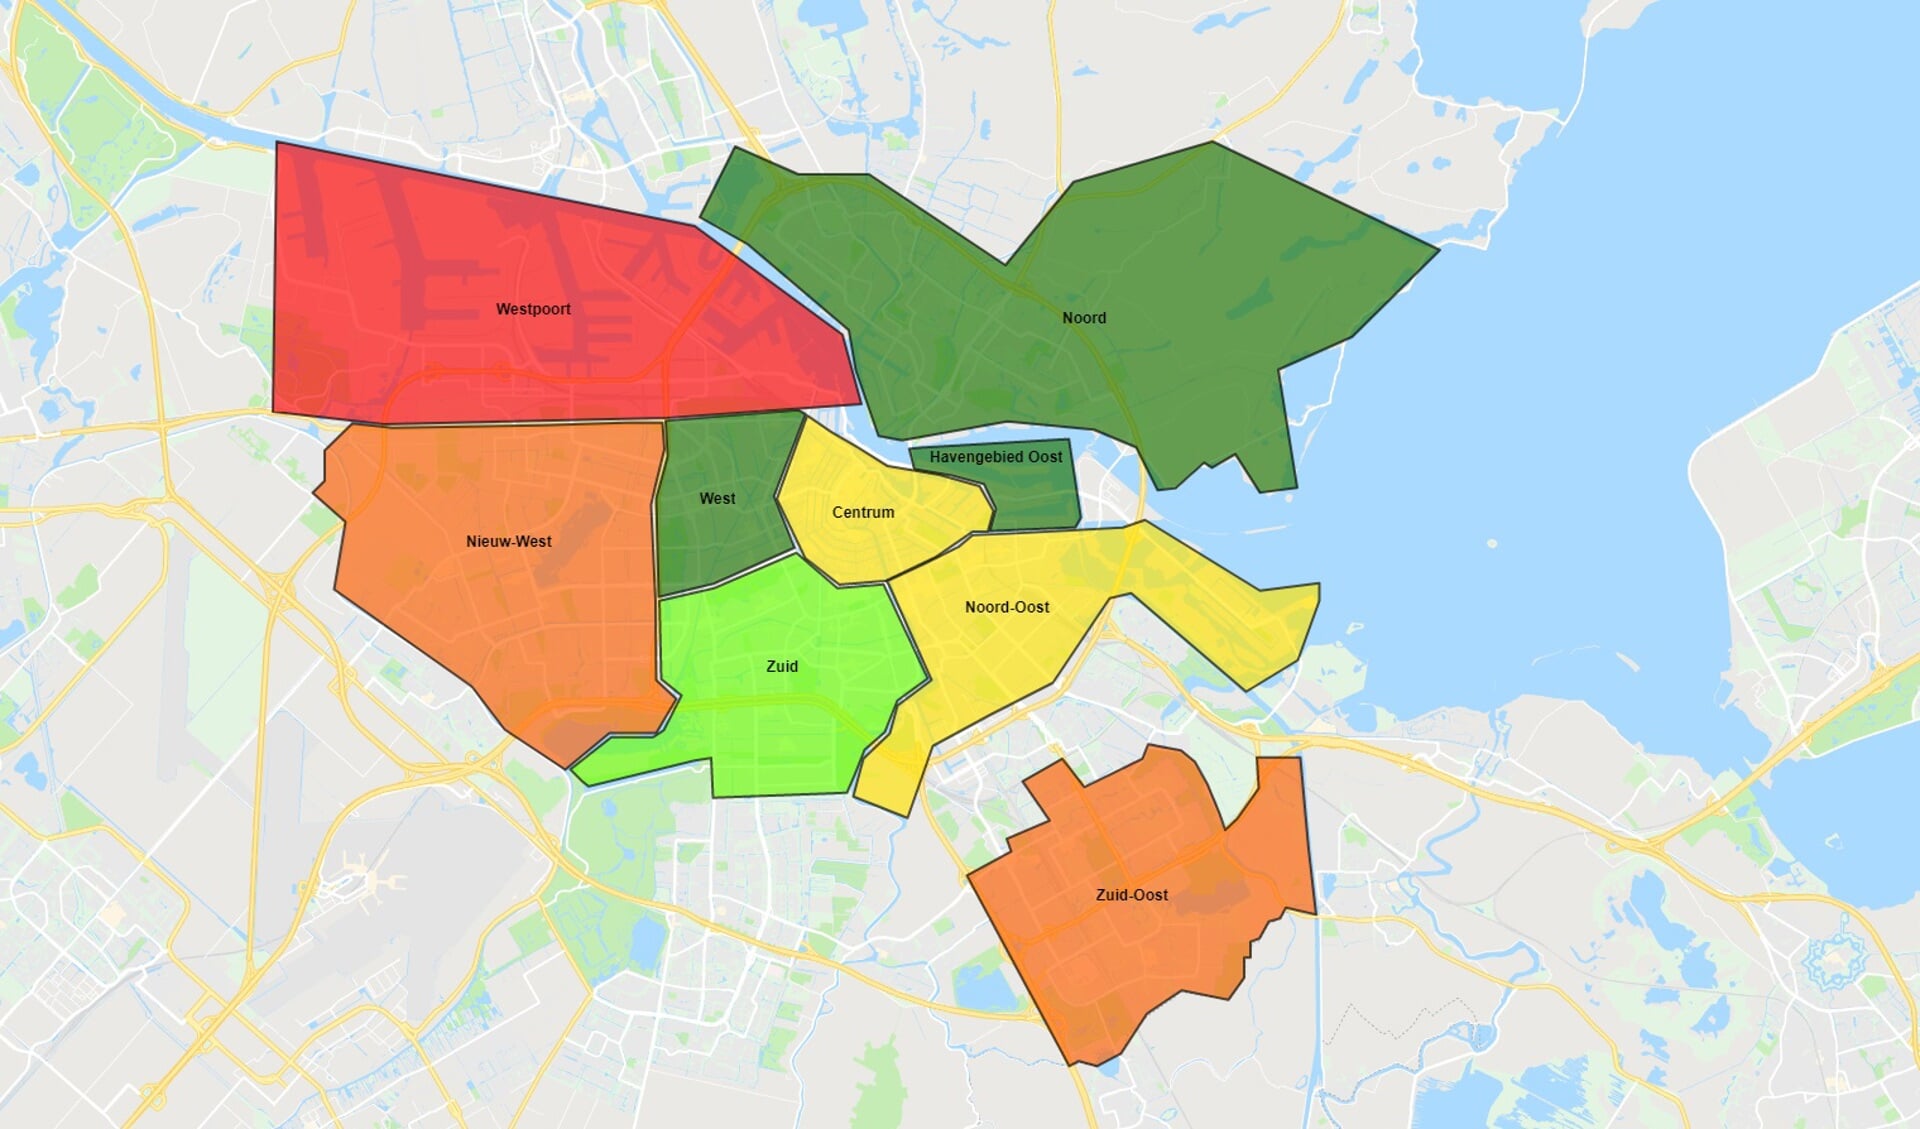 Op basis van de cijfers van Drimble en Politie.nl is er geanalyseerd hoe veilig de Amsterdamse buurten zijn. Valt een stadsdeel in de Rode zone? Dat betekent dat er veel ingebroken wordt in deze buurt. Valt een stadsdeel in de groene zone? Dat betekent dat deze buurt veilig is en dat er weinig word